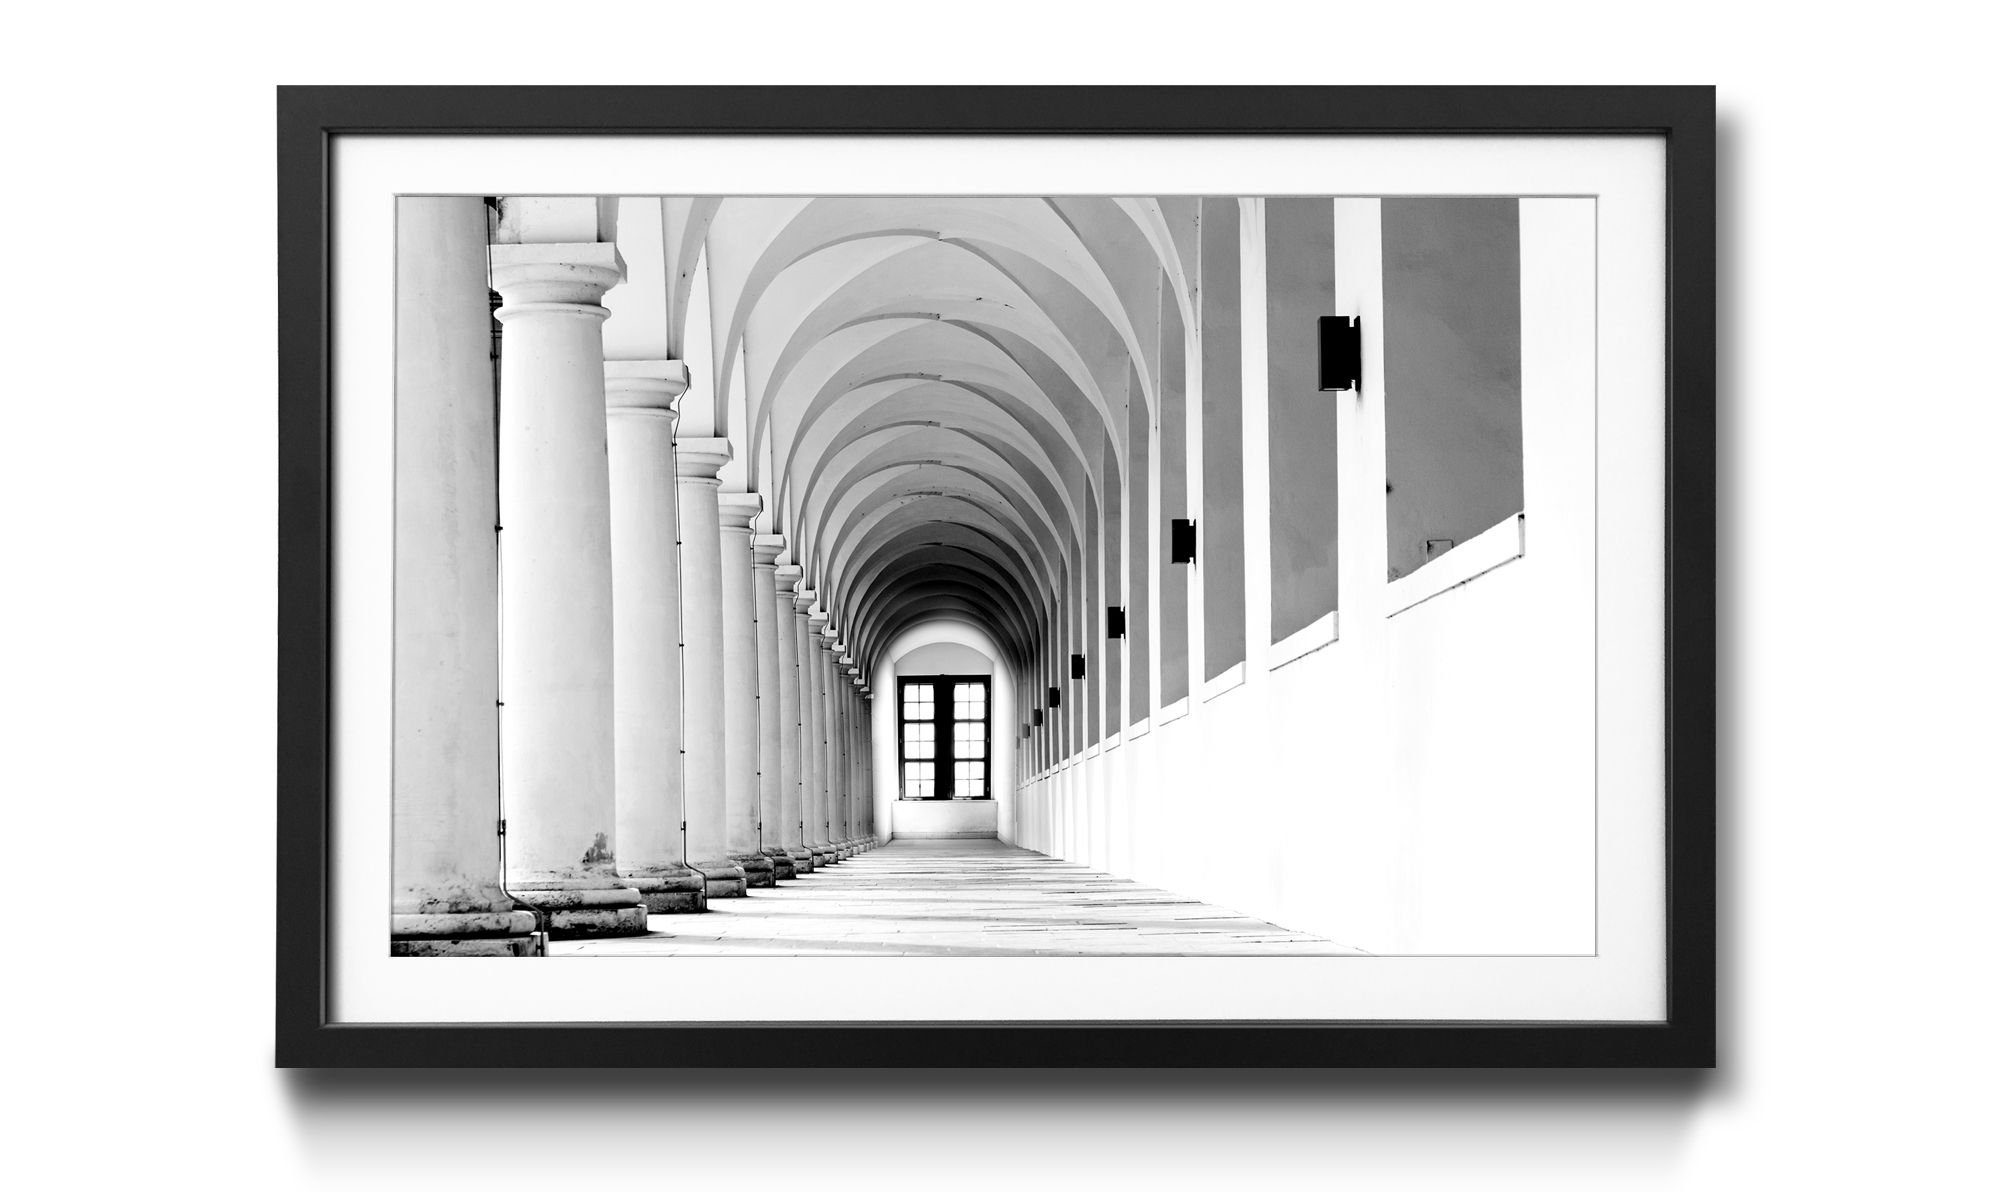 Gallery, Architektur, 4 Wandbild, Columns in erhältlich Größen WandbilderXXL Kunstdruck